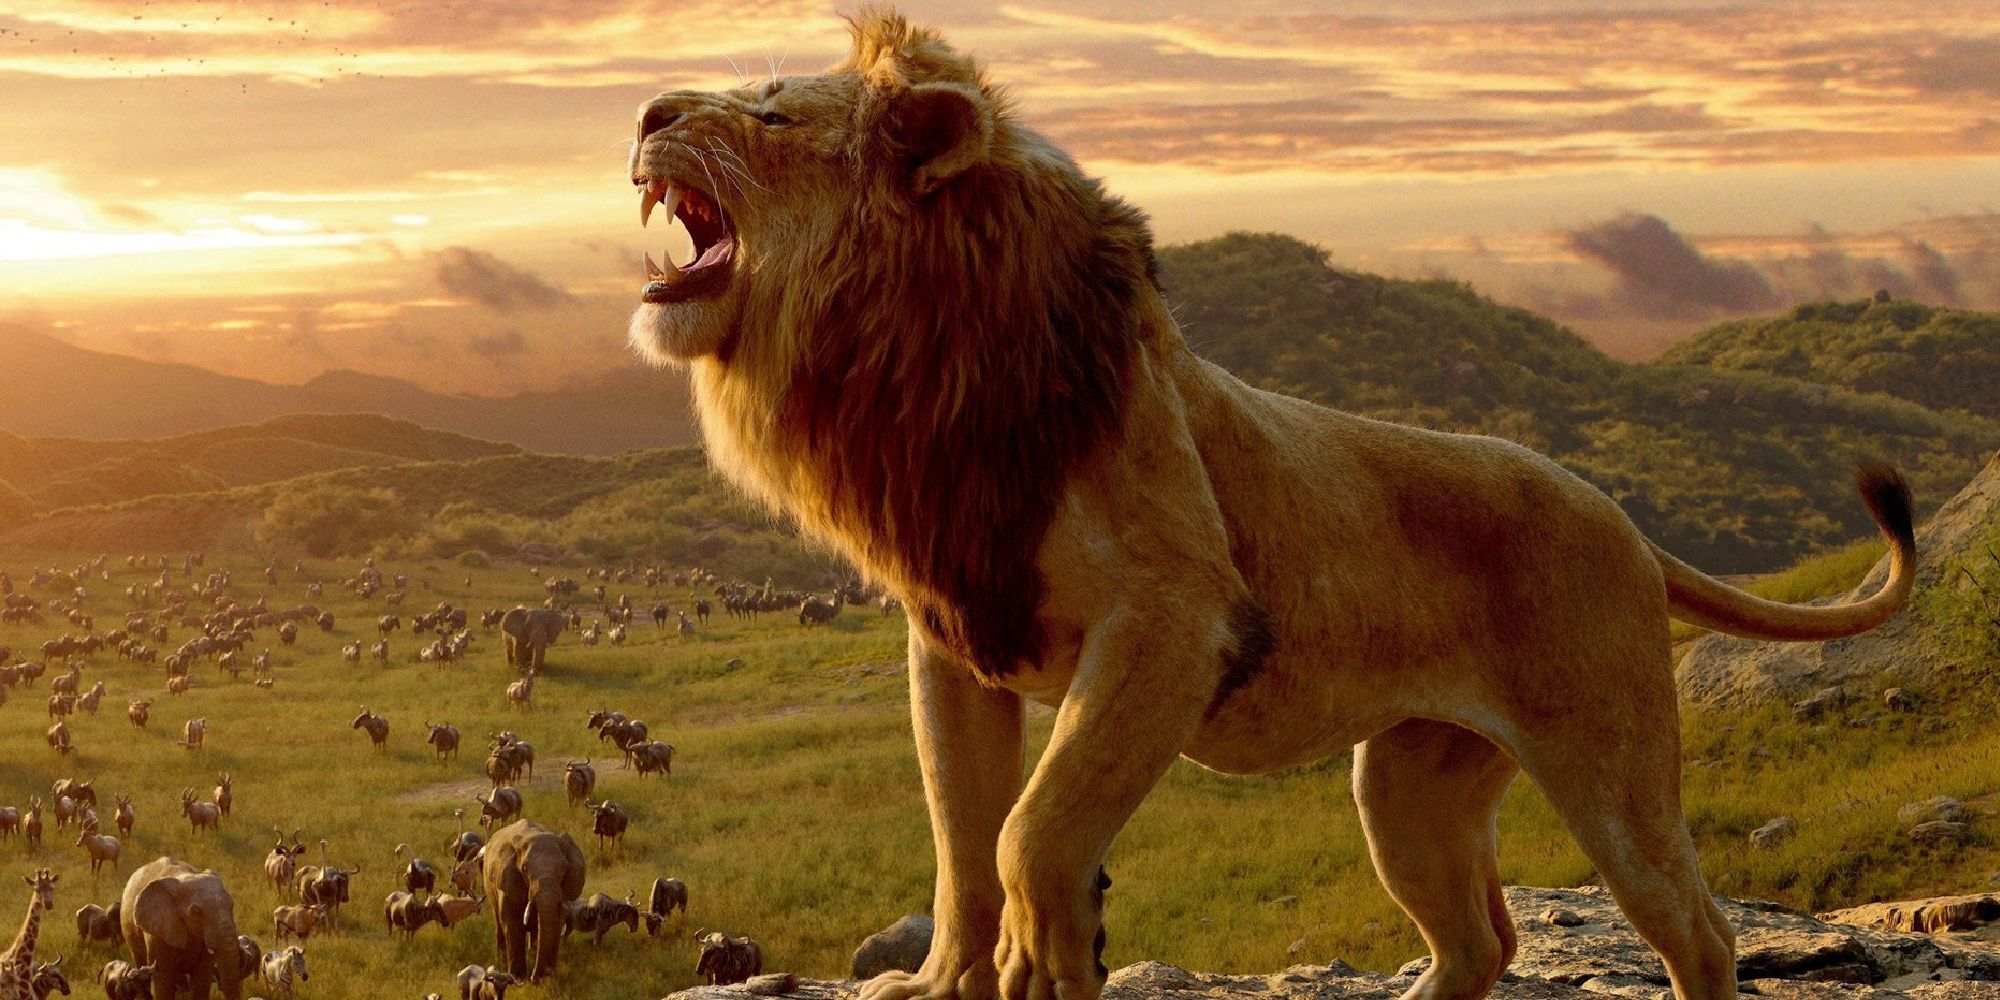 A shot of Musafa rawring in The Lion King.